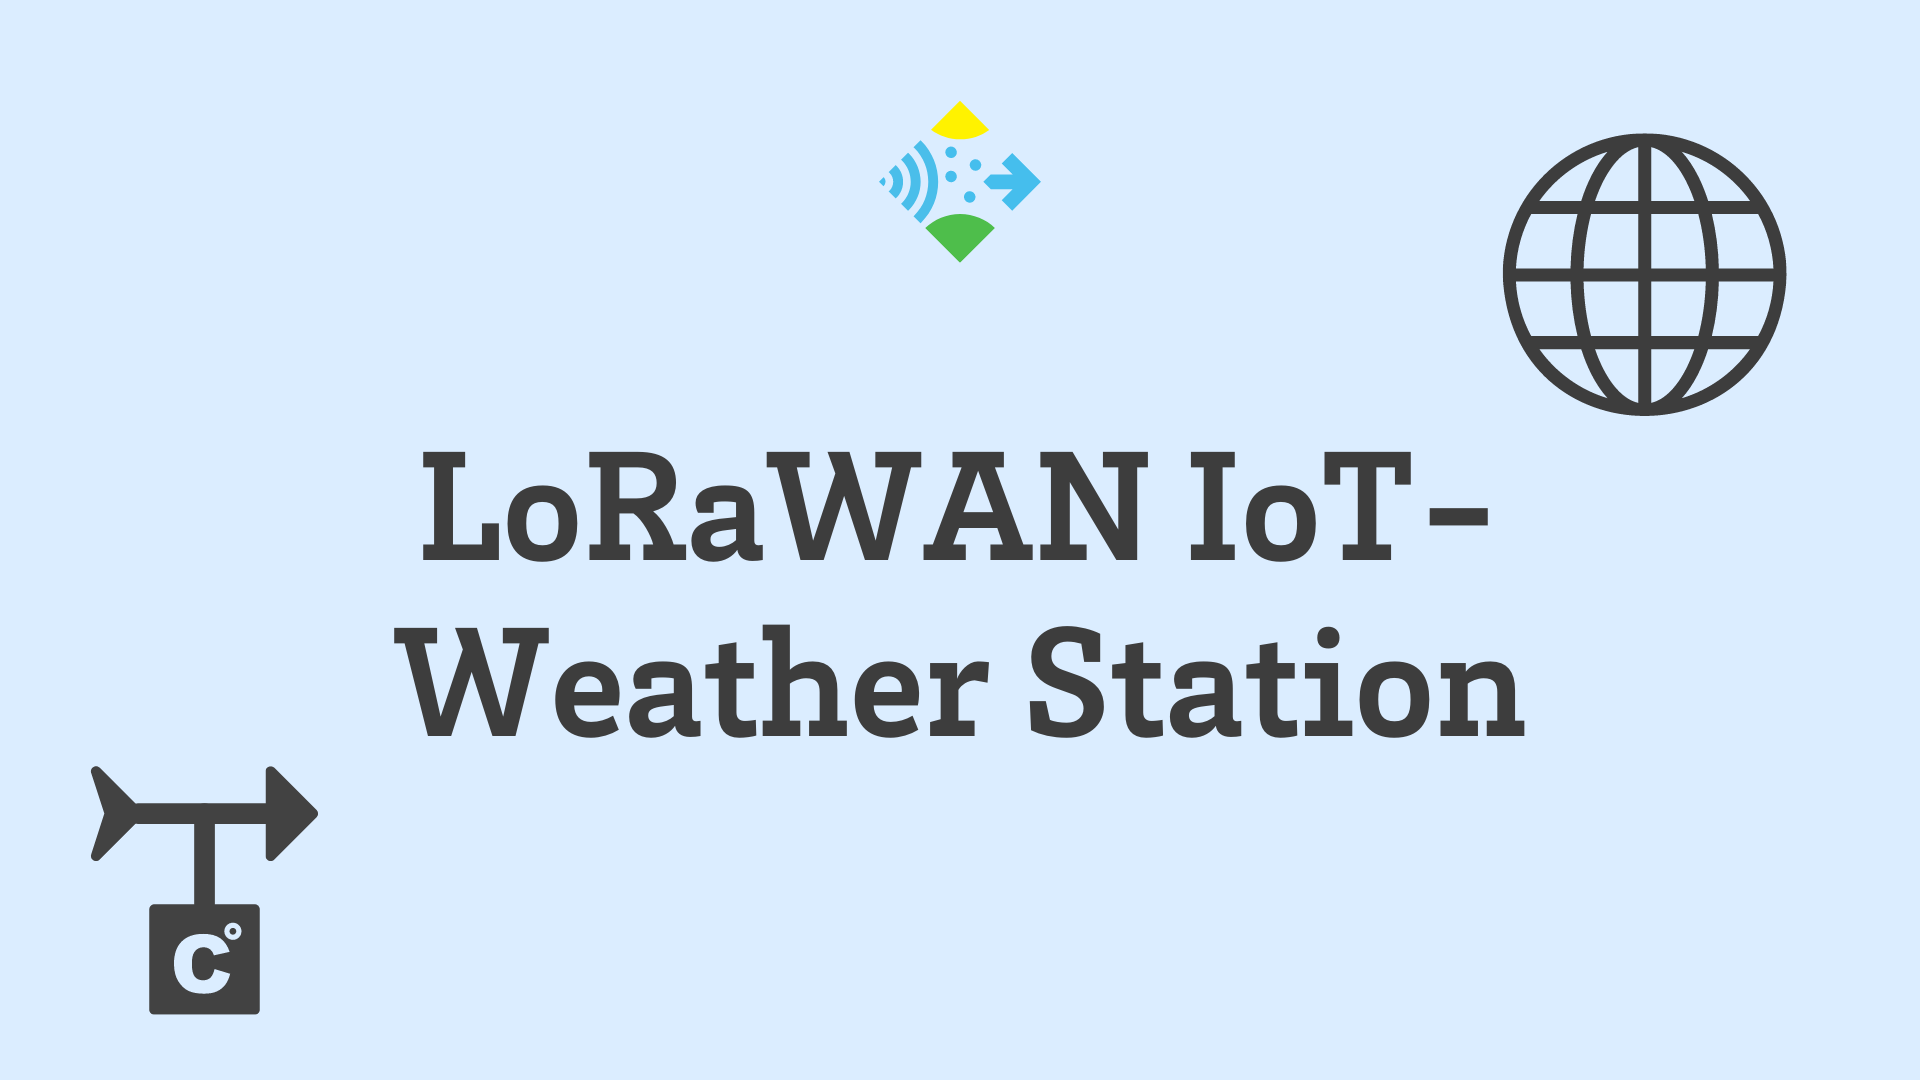 Lorawan Iot Weatherstation - Logo